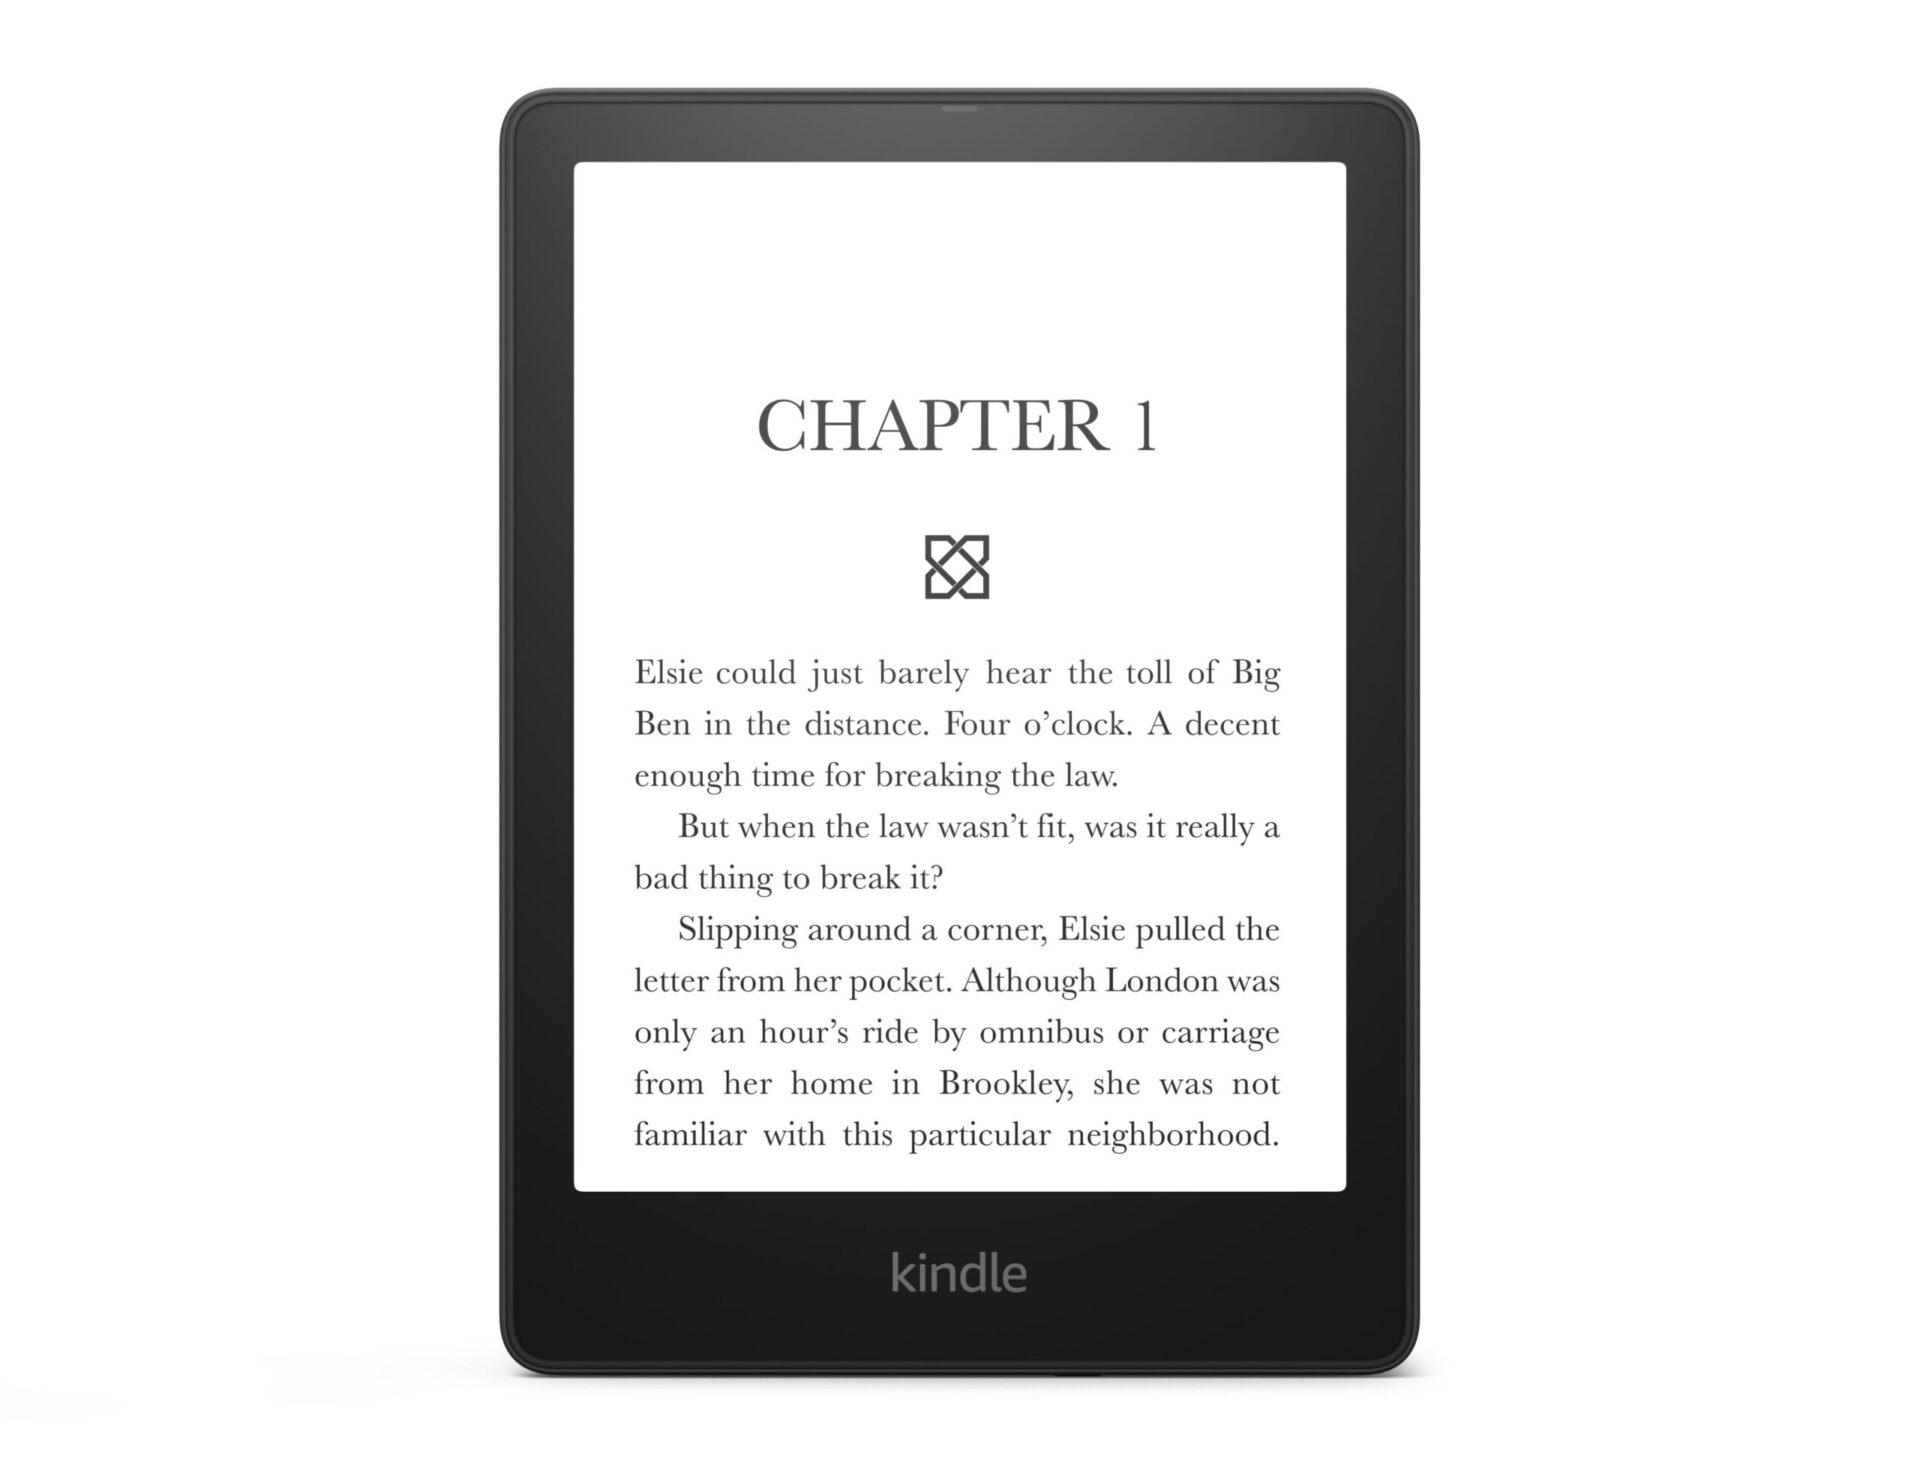 Kindle Paperwhite 5 là một trợ thủ đắc lực cho những người yêu sách như bạn, với nhiều tính năng ưu việt như ánh sáng nền đồng nhất, khả năng chống nước và độ phân giải cao. Trang bị cấu hình mạnh mẽ, Kindle Paperwhite 5 sẽ mang đến cho bạn những giây phút đọc sách ru hồn trong từng trang sách.